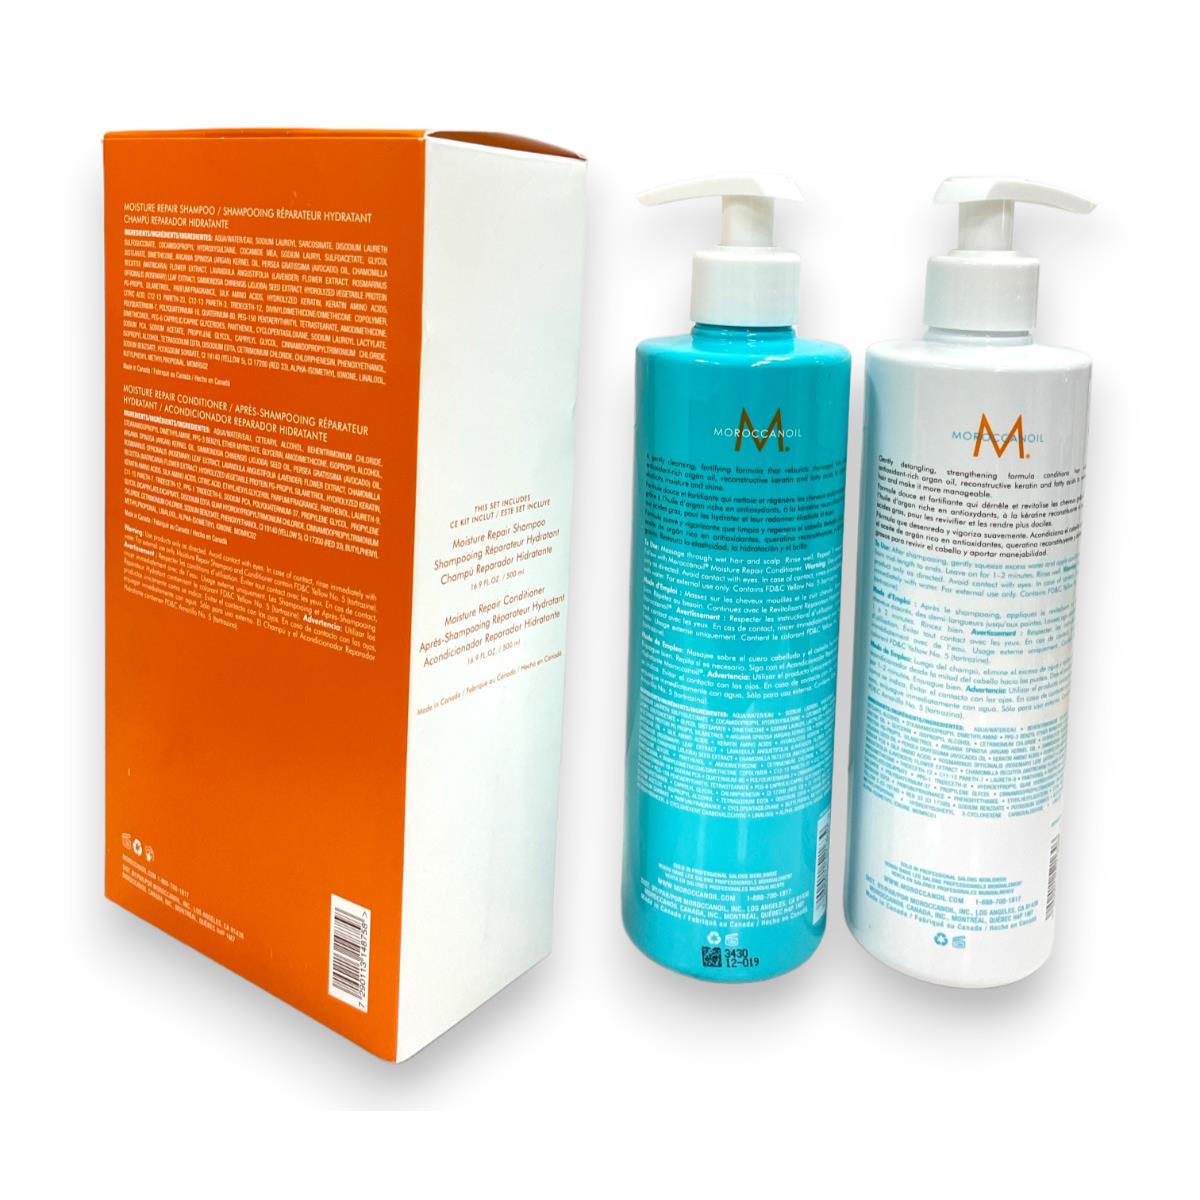 Moroccanoil Repair Shampoo Conditioner Duo 16.9fl.oz/500ml As Seen In Pics